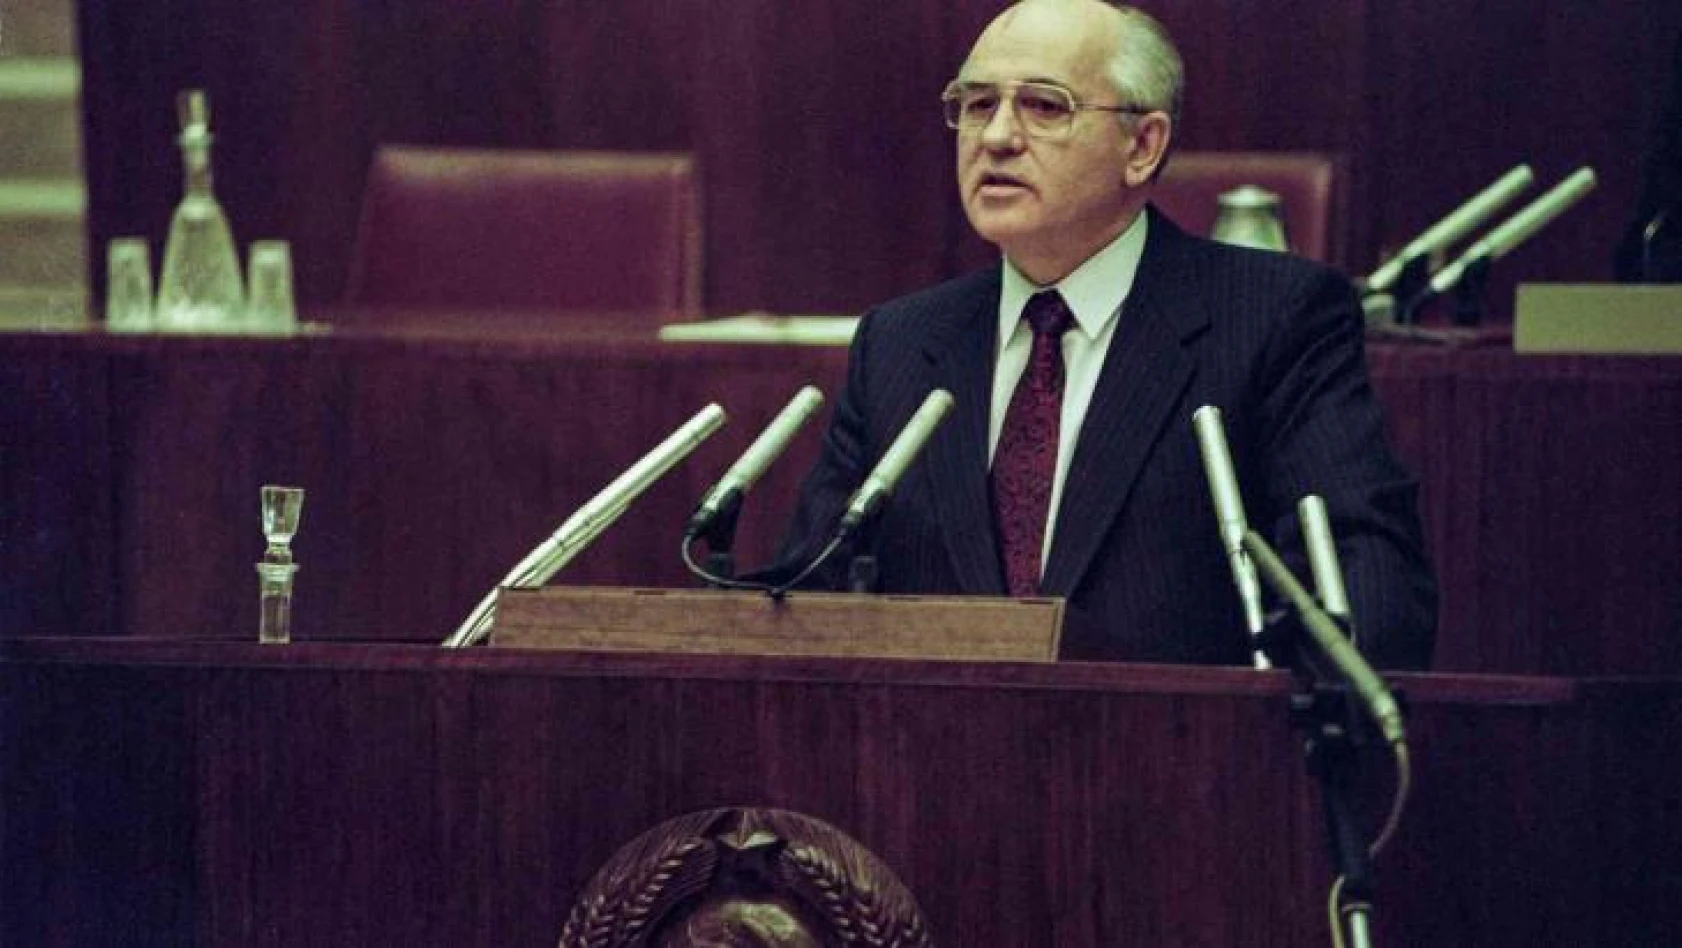 Sovyet Sosyalist Cumhuriyetler Birliği'nin (SSCB) son lideri Mihail Gorbaçov 91 yaşında tedavi gördüğü hastanede hayatını kaybetti.